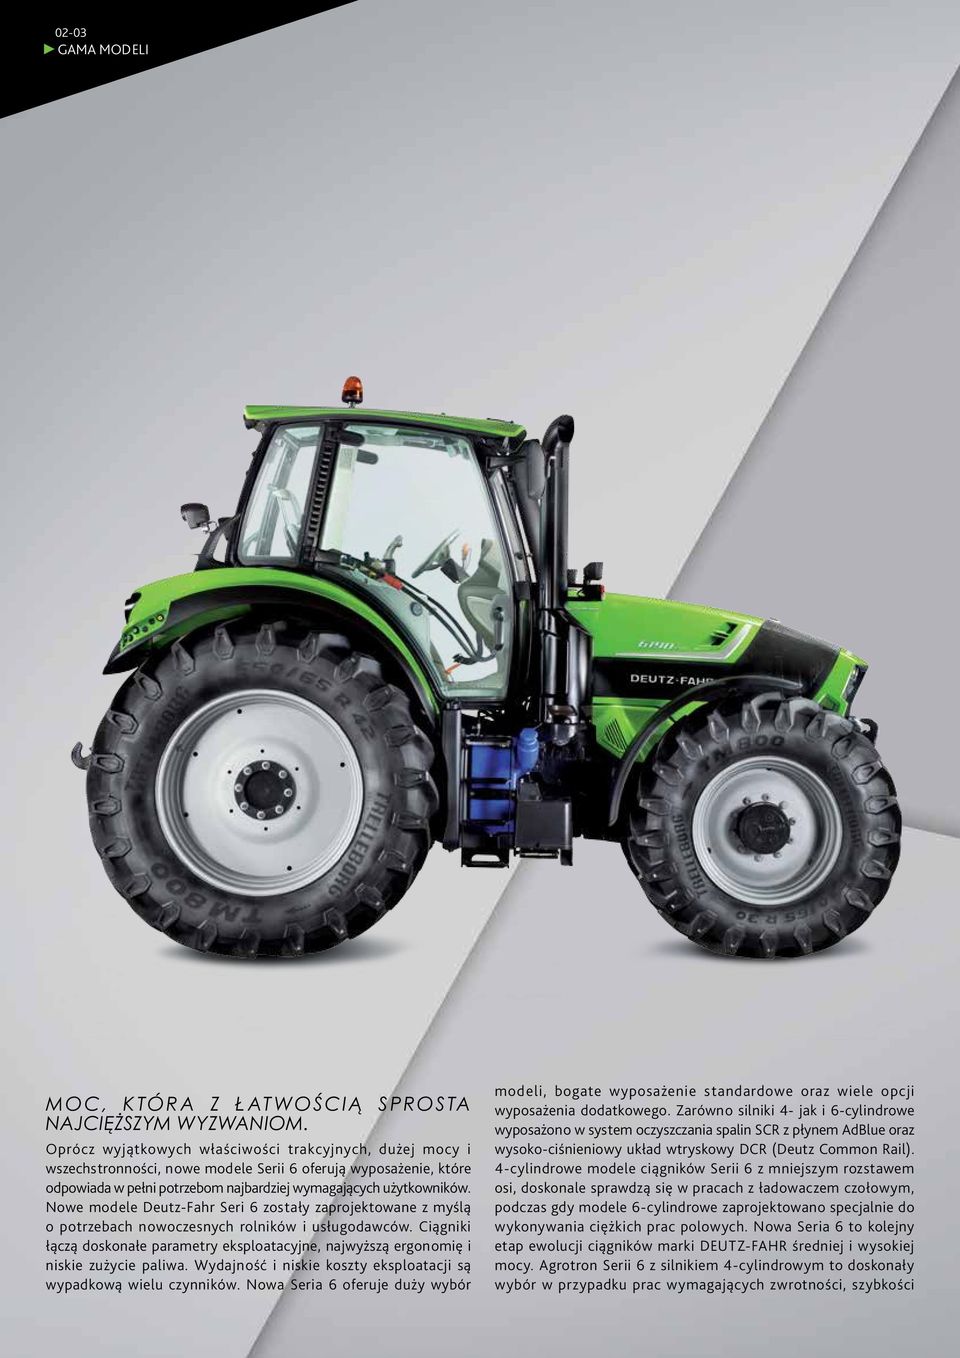 Nowe modele Deutz-Fahr Seri 6 zostały zaprojektowane z myślą o potrzebach nowoczesnych rolników i usługodawców.